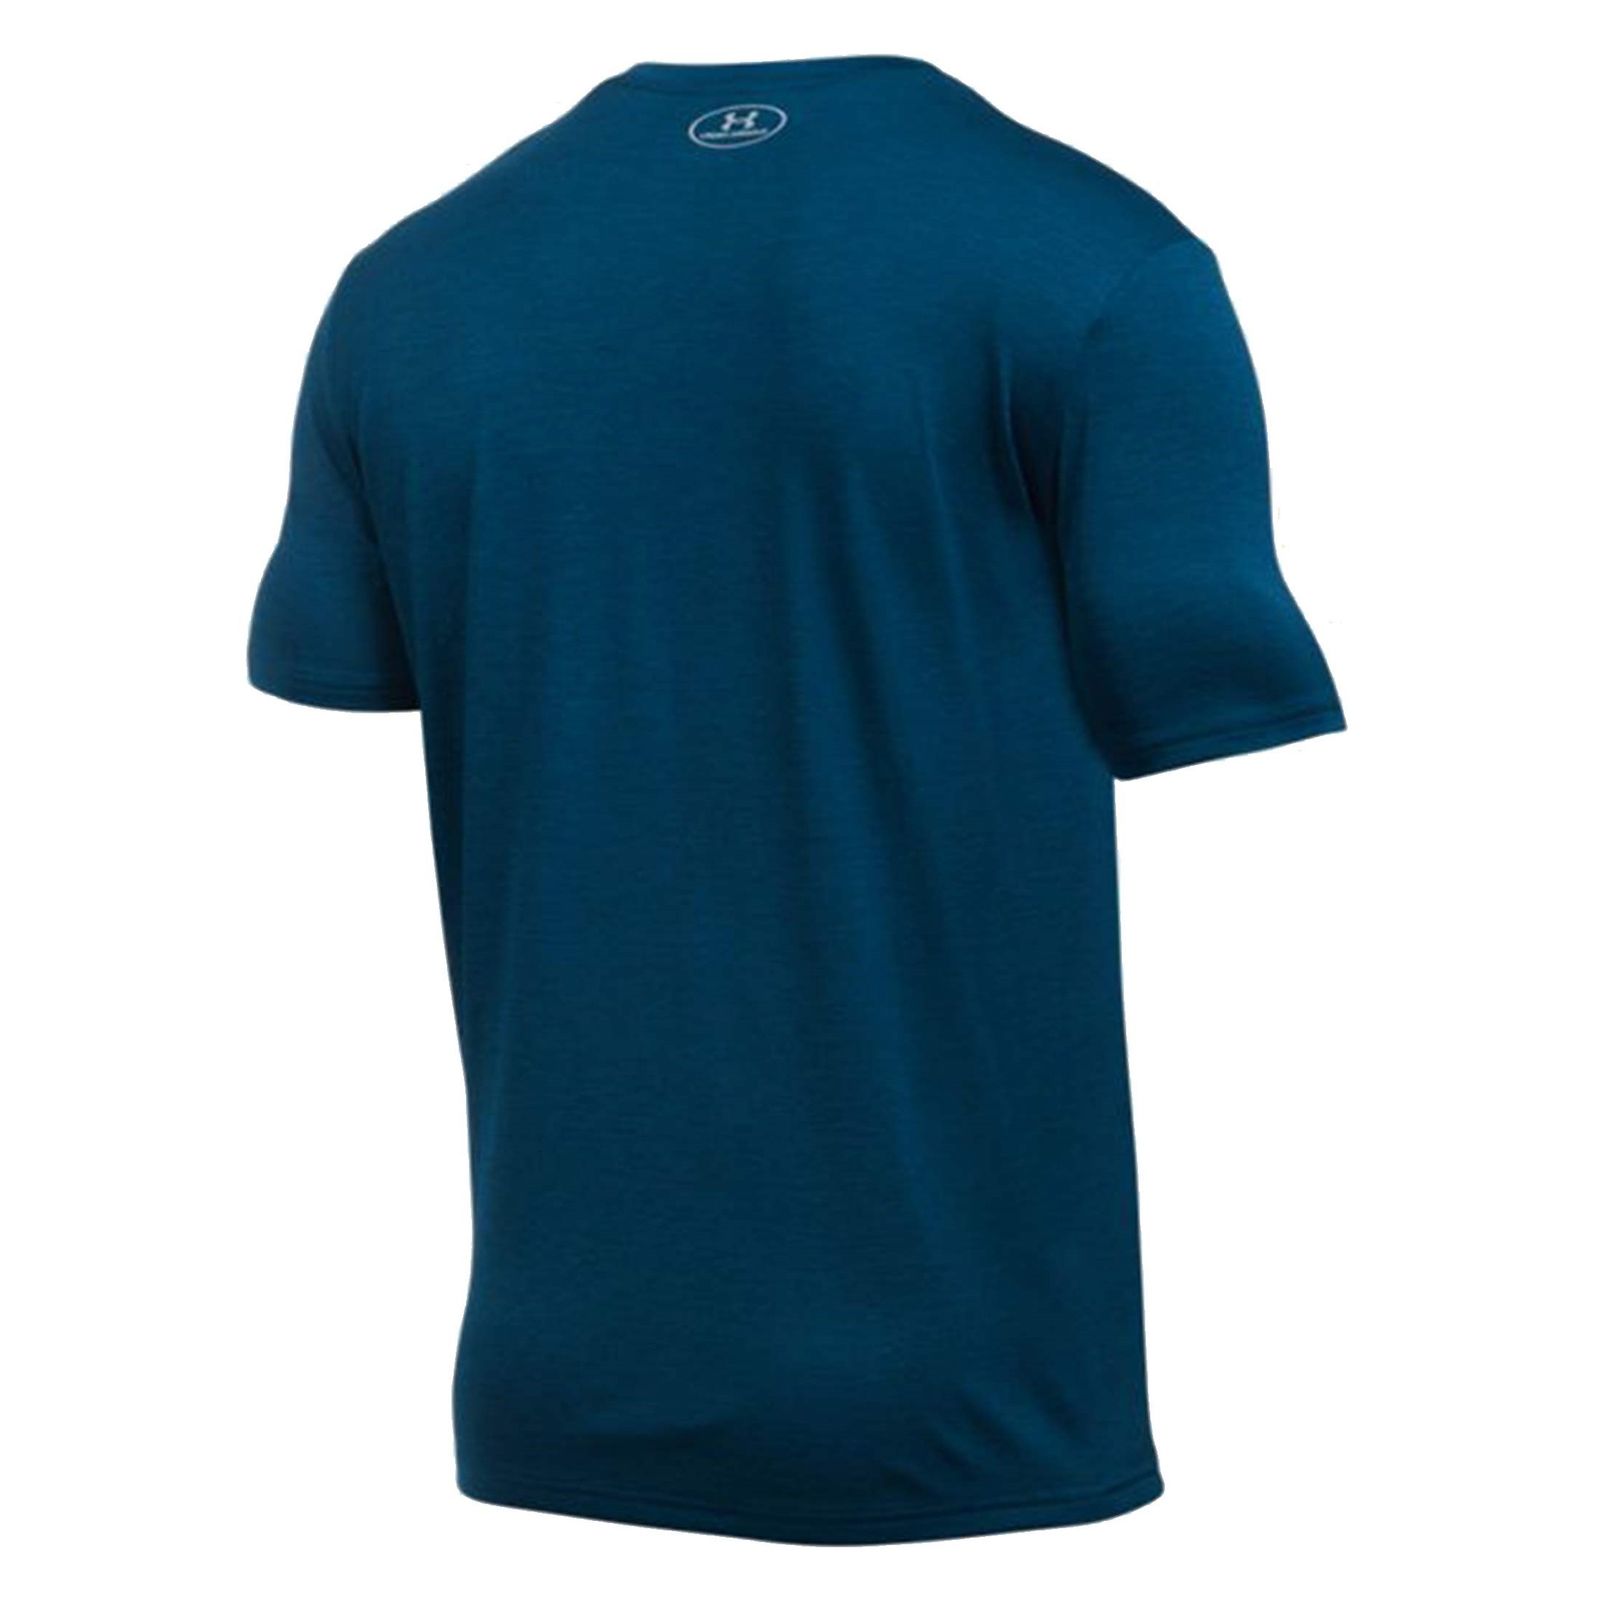 تی شرت ورزشی یقه گرد مردانه - آندر آرمور - آبي - 3